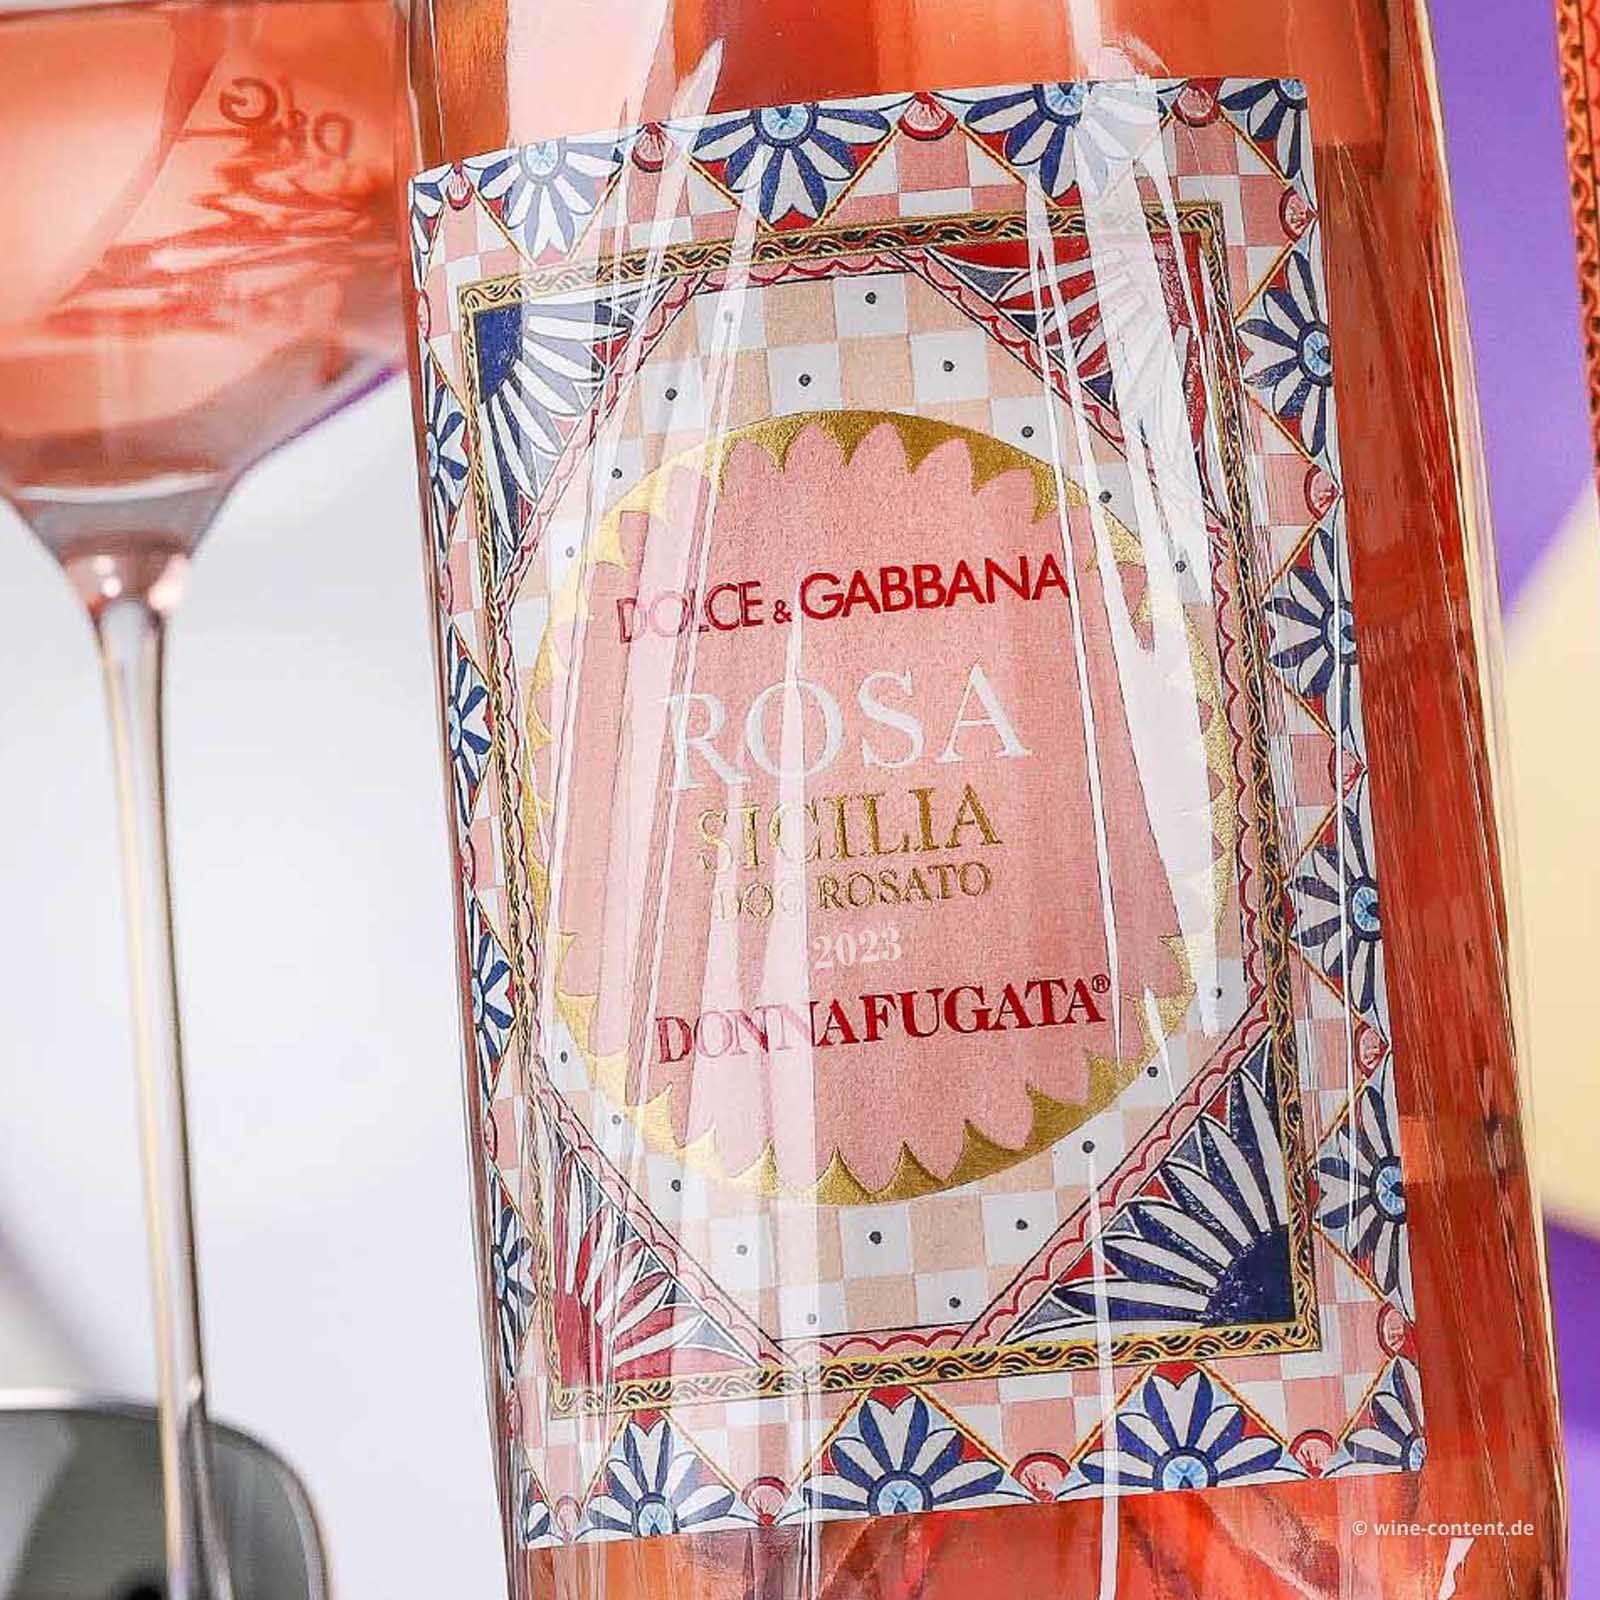 Sicilia Rosato 2023 Rosa Dolce & Gabbana